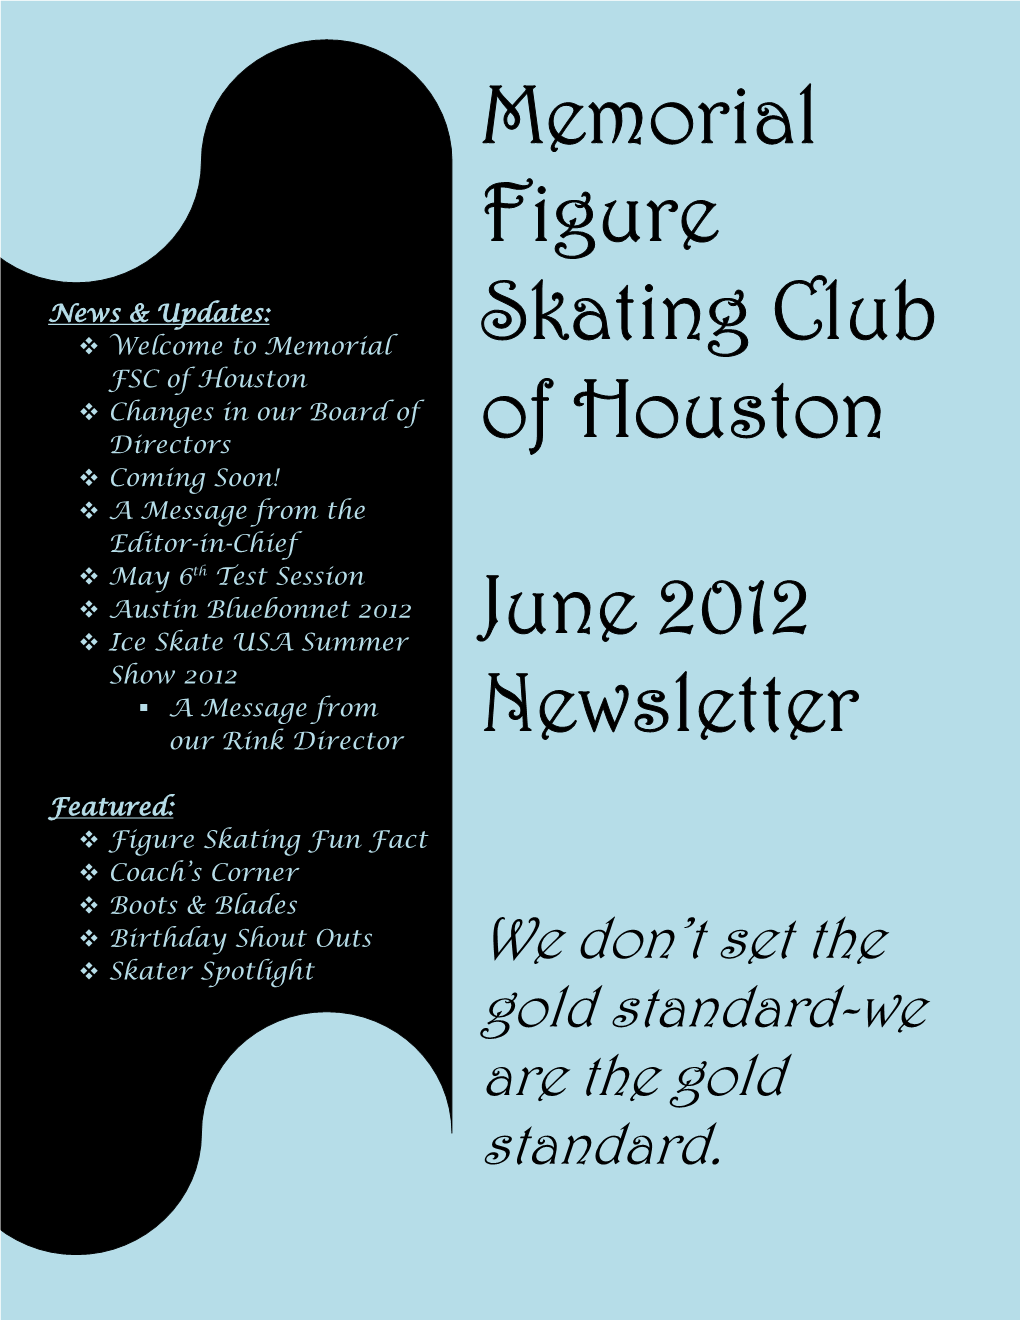 Memorial Figure Skating Club of Houston June 2012 Newsletter